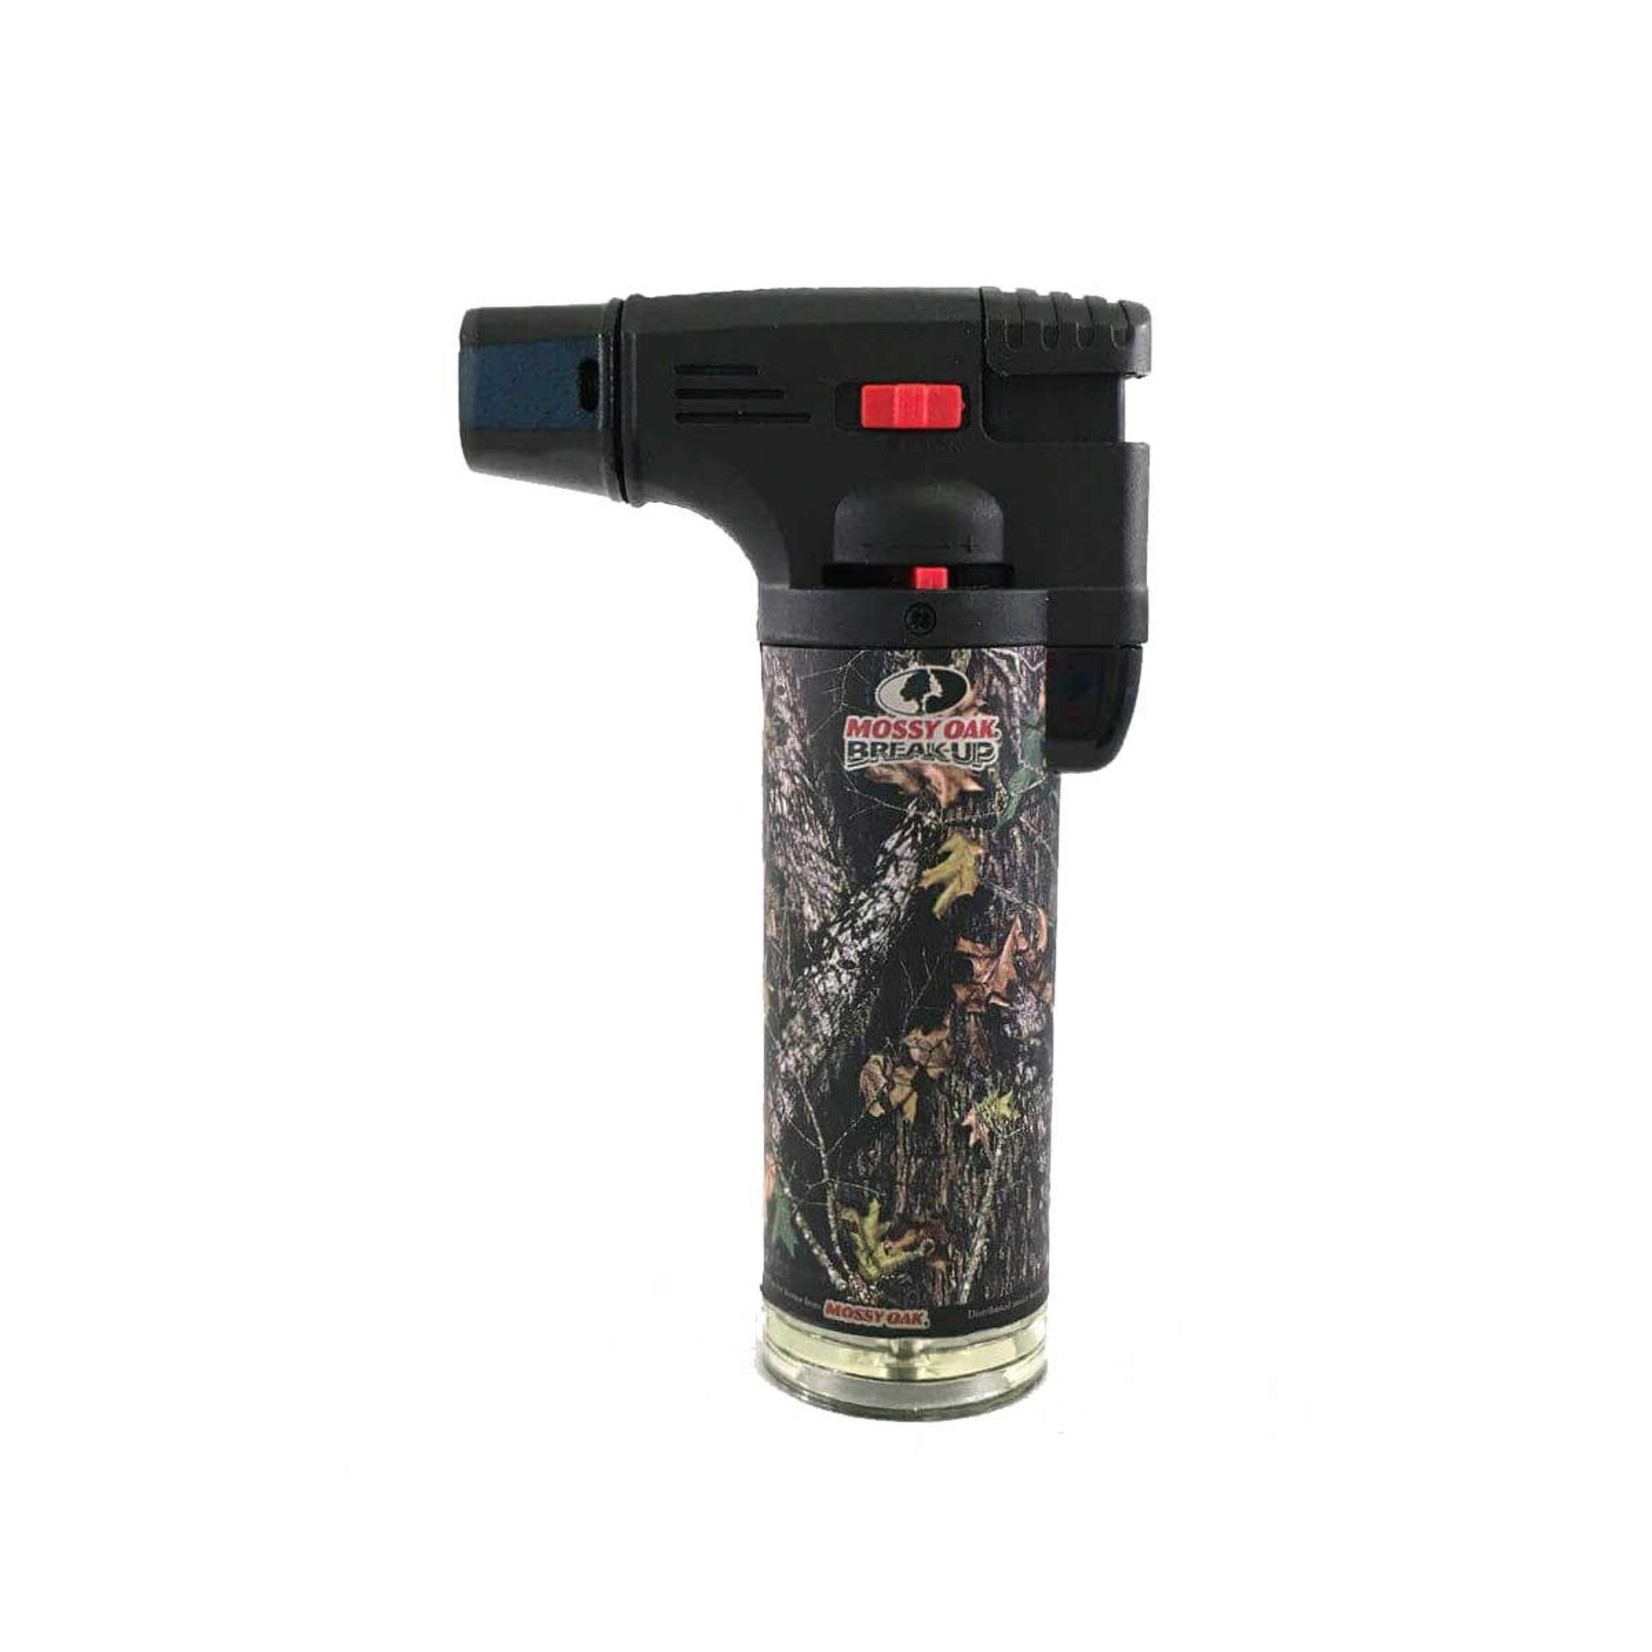 Mossy oak torch gun lighter